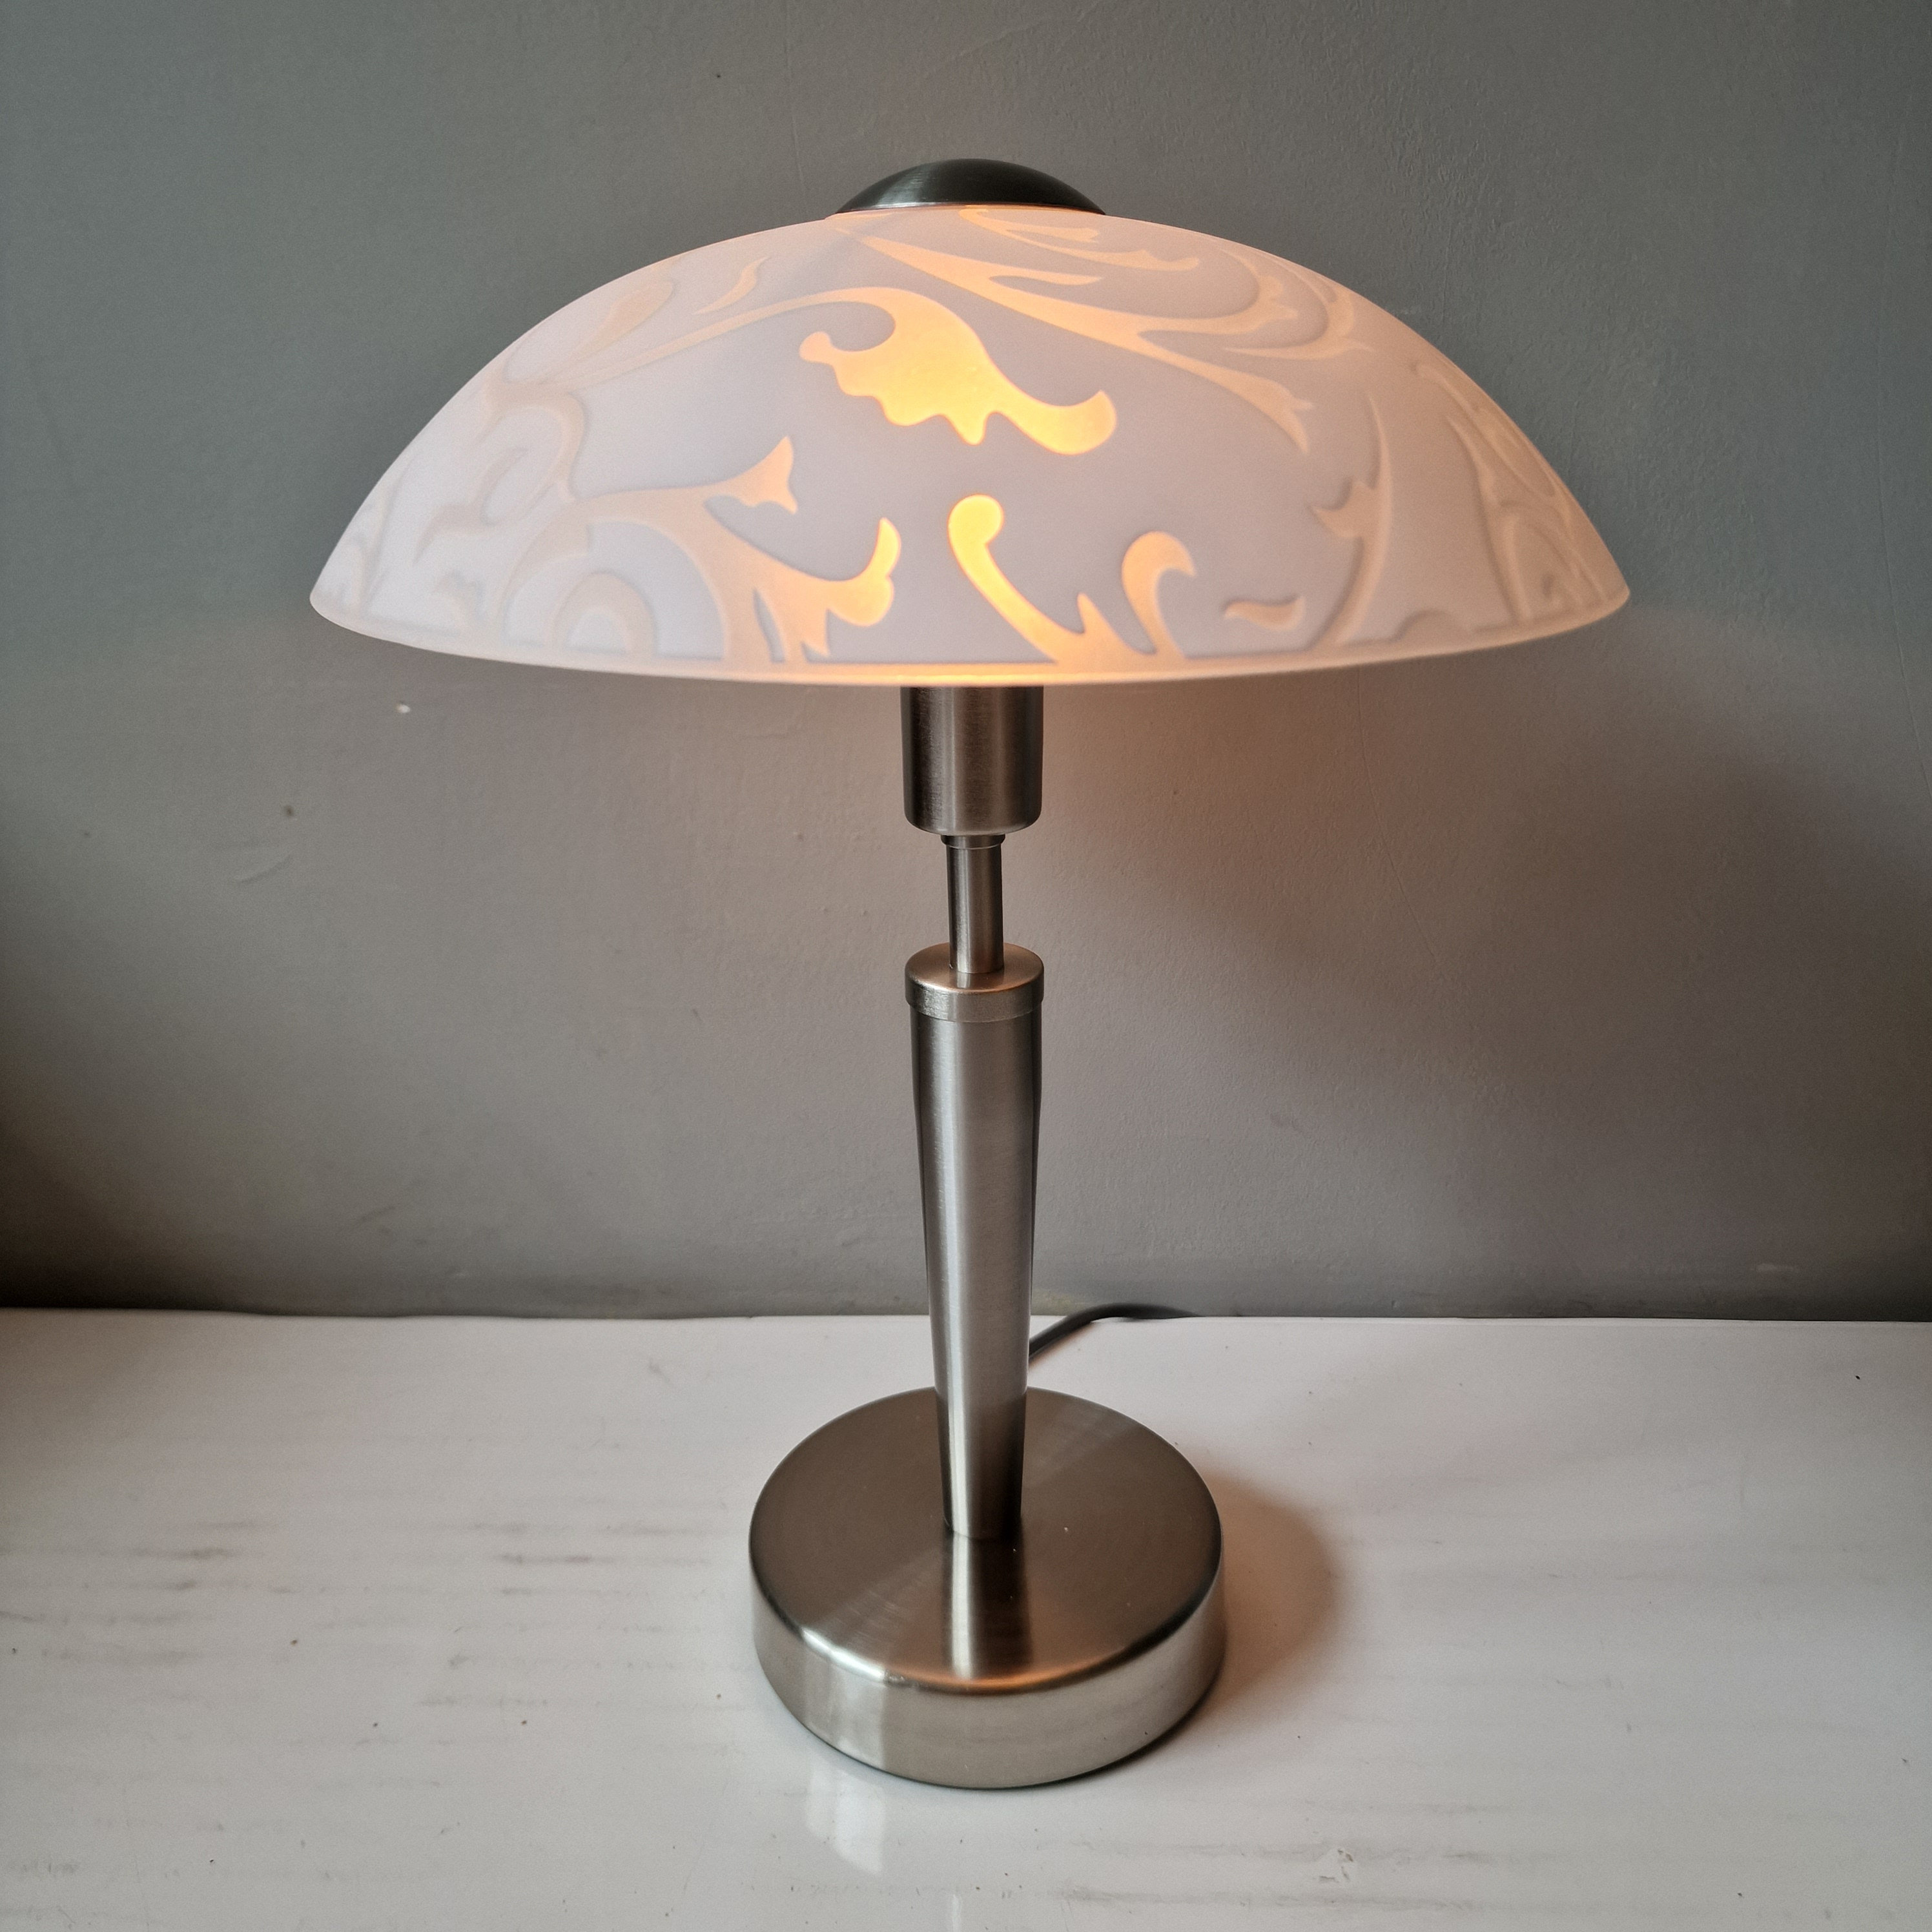 Beringstraat domein Arrangement Tafellamp Mushroom Chrome Milkglass Touch Lamp Tablelamp - Etsy